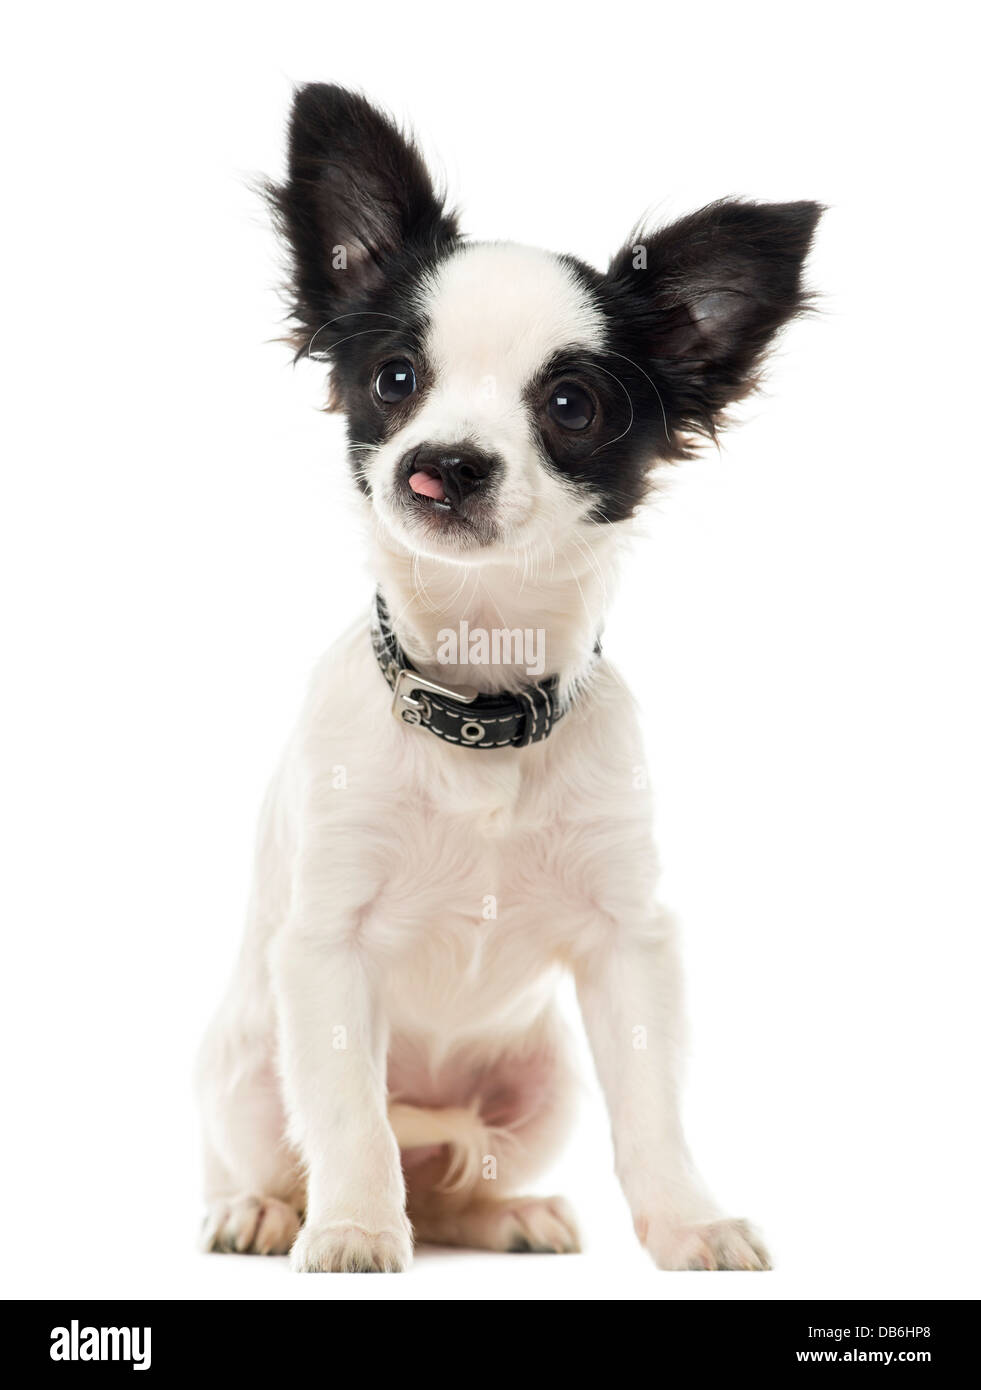 Hasenscharte Chihuahua sitzen vor weißem Hintergrund Stockfotografie - Alamy